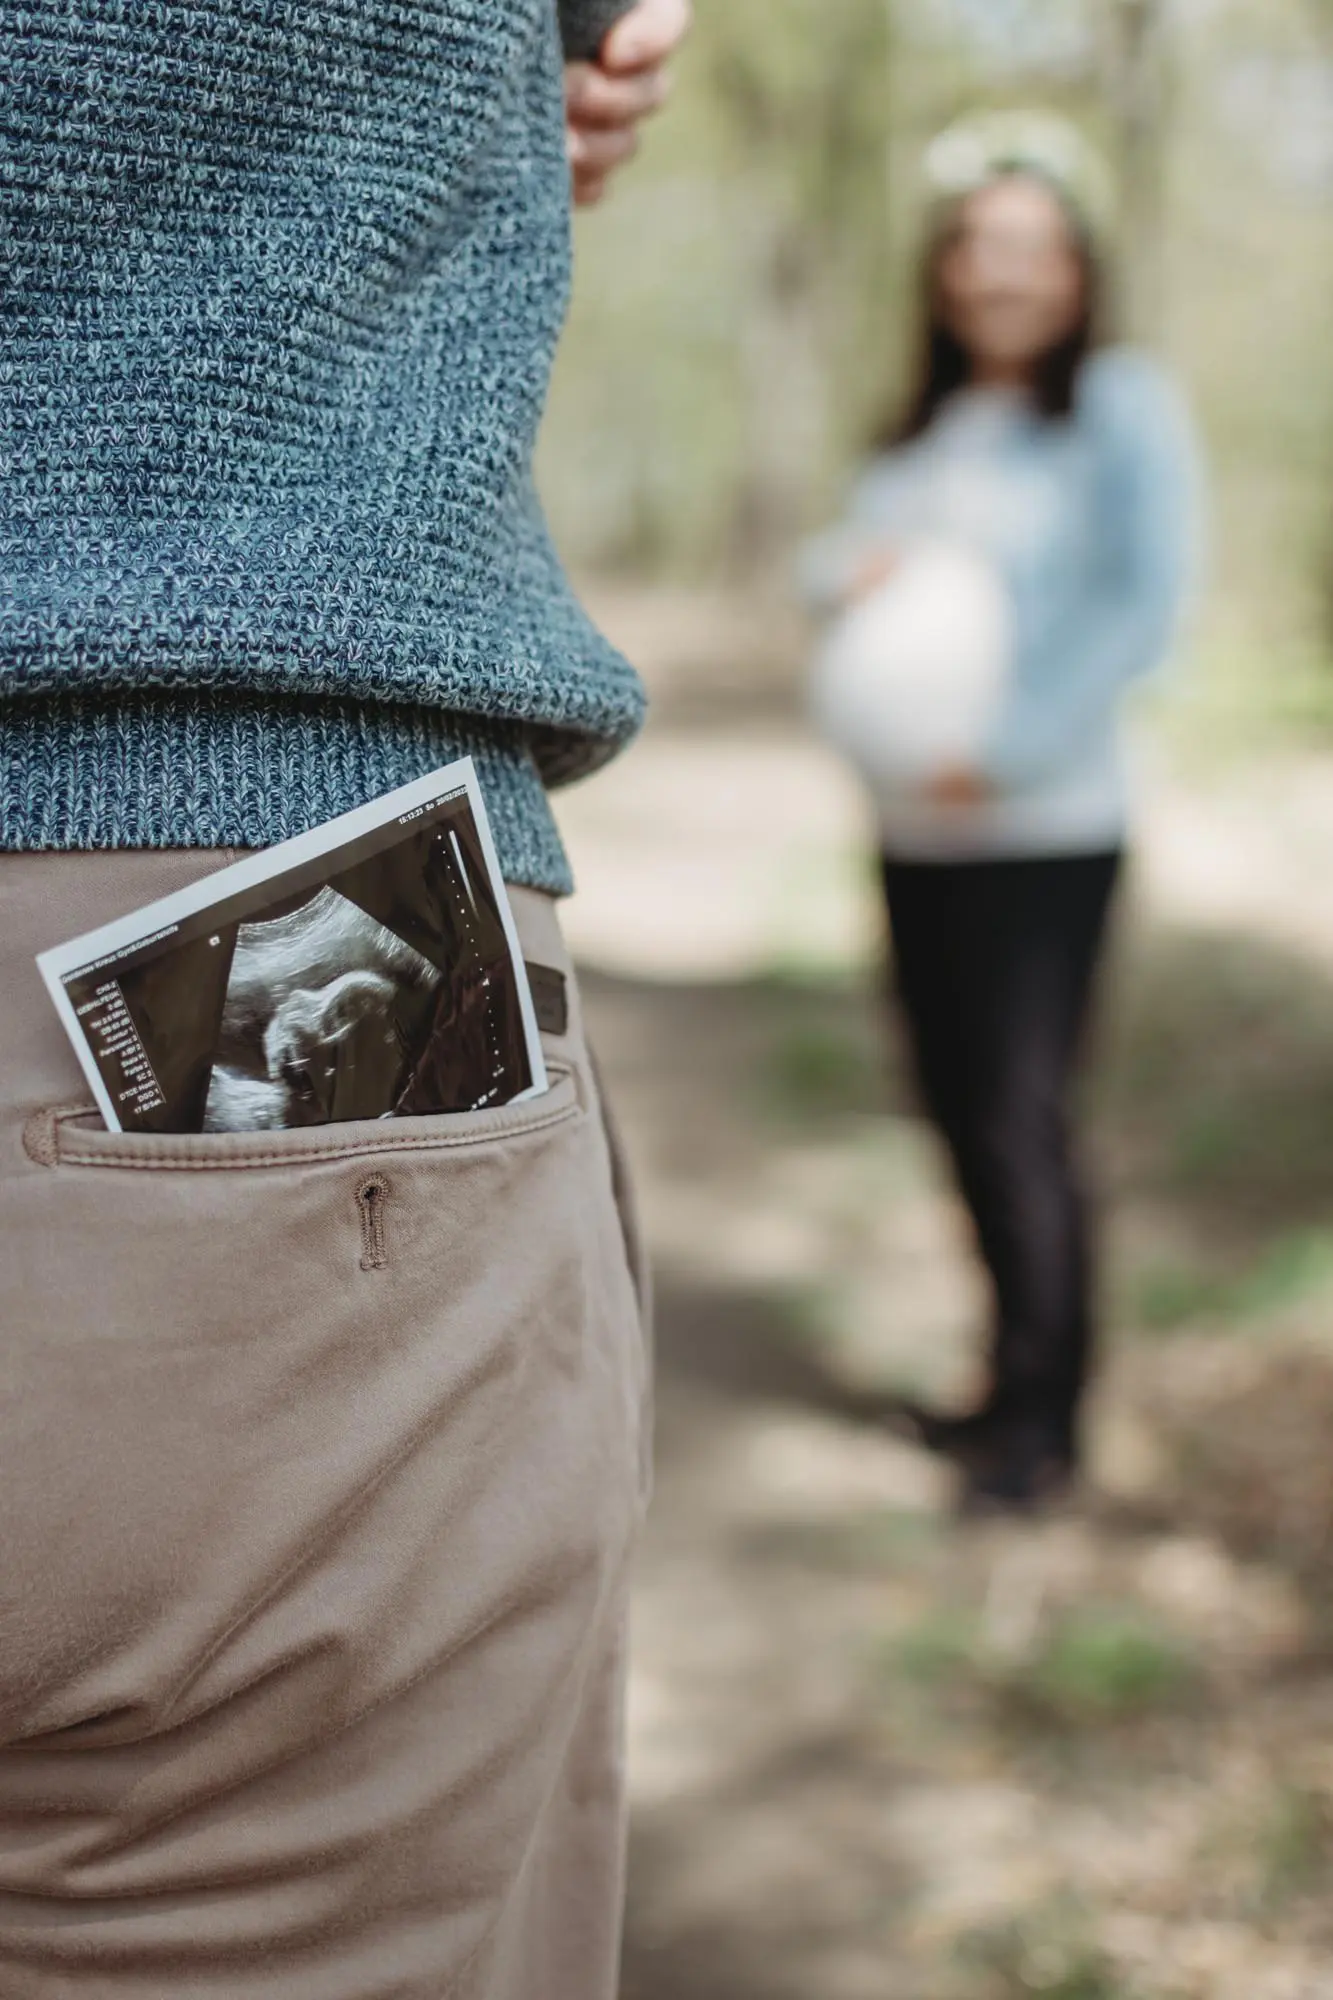 Babybauchshooting: Papa hat Ultraschallbild in Hosentasche und Mama steht im Hintergrund